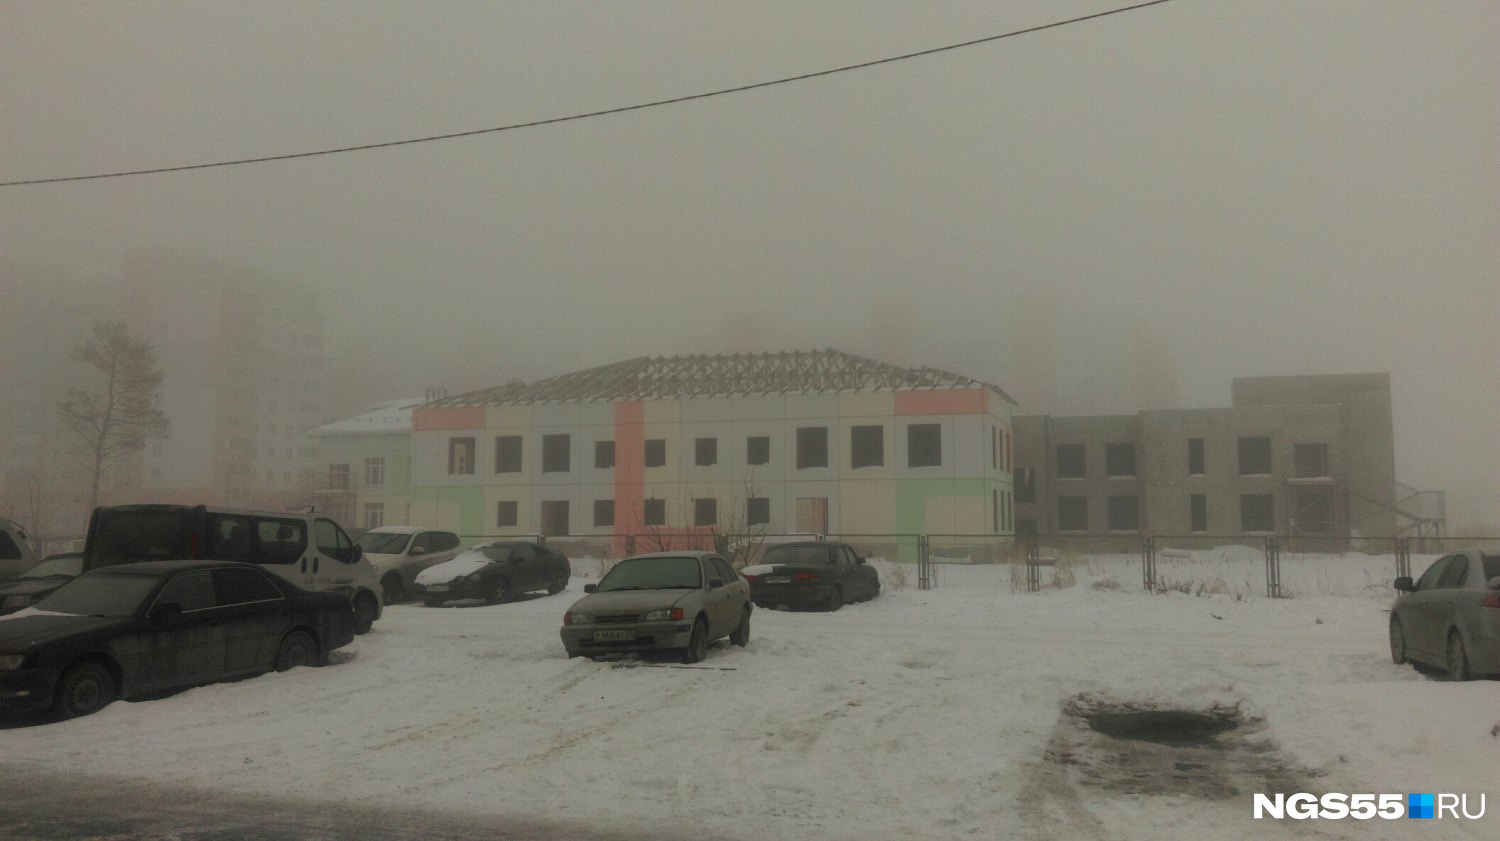 Утром из-за тумана с трудом были видны только здания в радиусе 50 метров